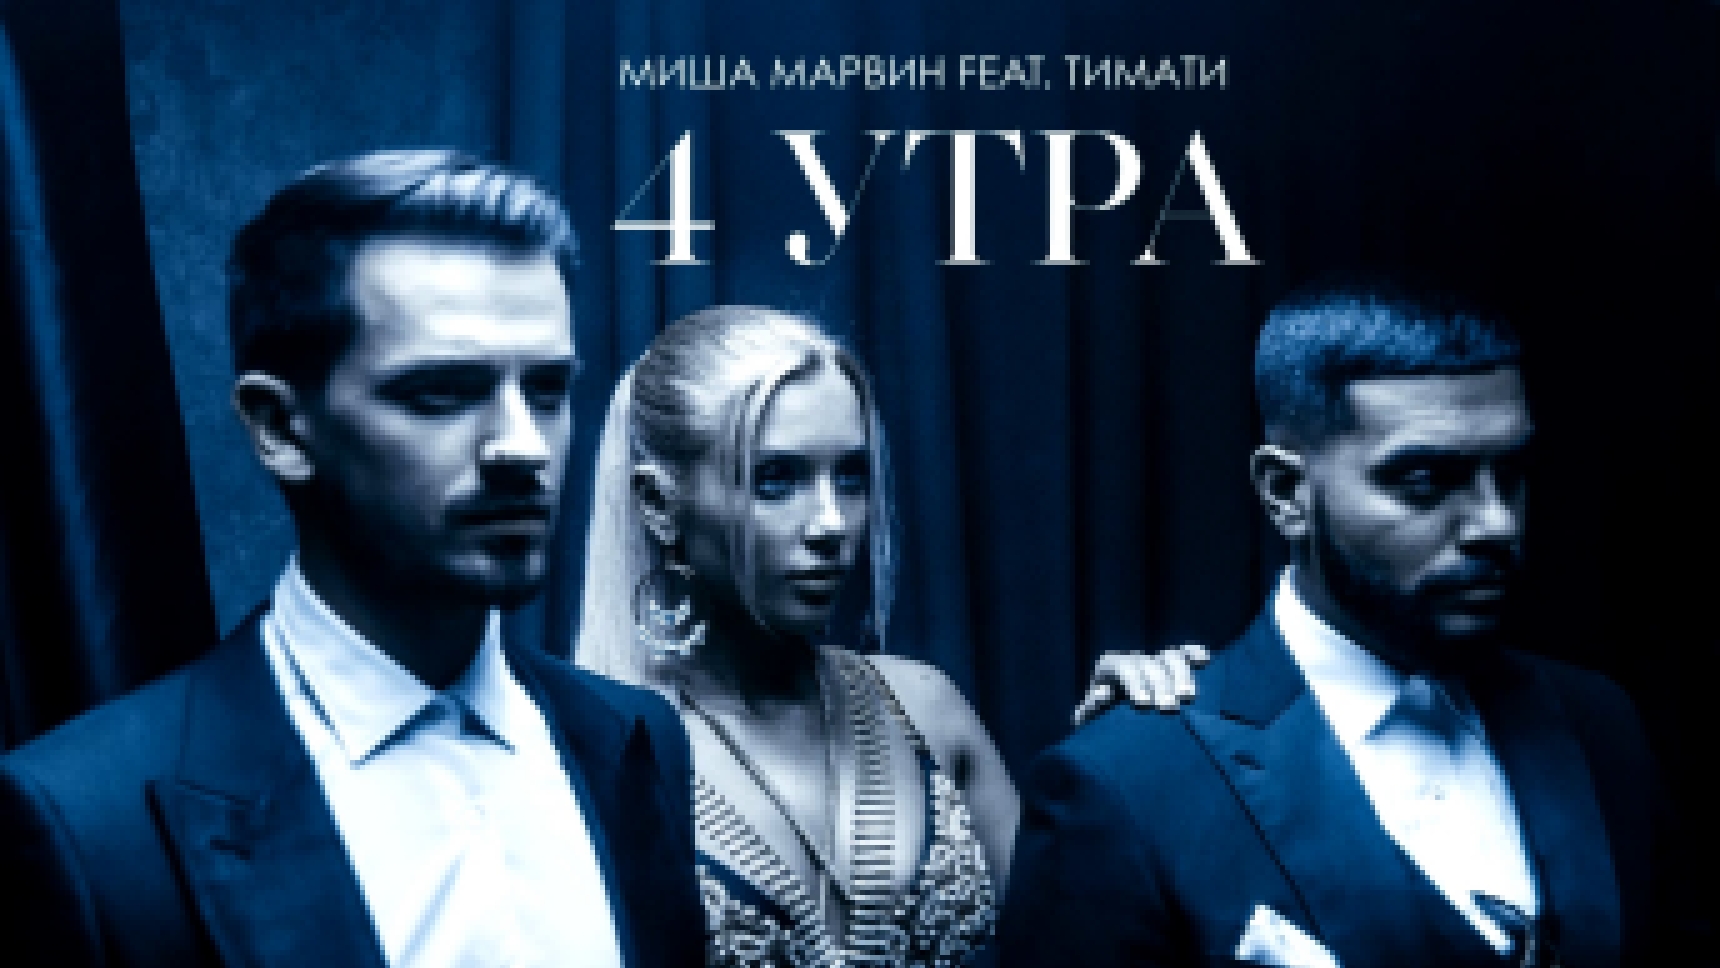 Миша Марвин feat Тимати - 4 утра (премьера клипа, 2018) - видеоклип на песню